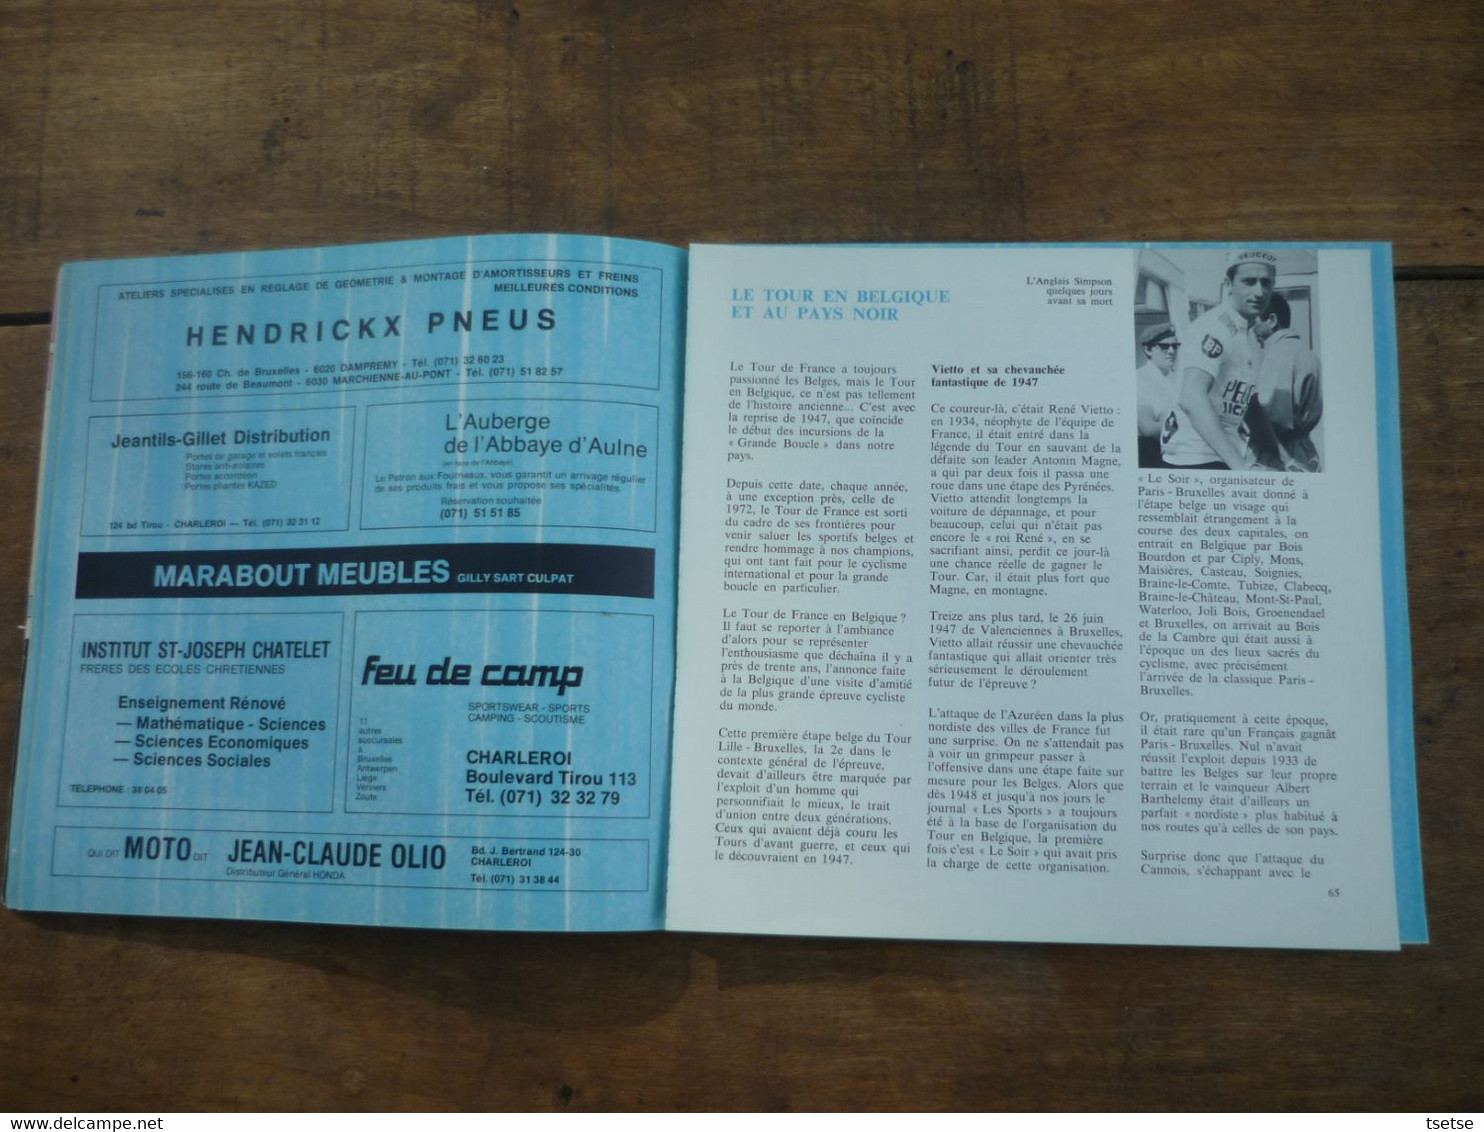 Tour de France , 27 juin 1975 - Charleroi , ville départ  ... Livre souvenir  / 131 pages ... Vainqueur F. Moser